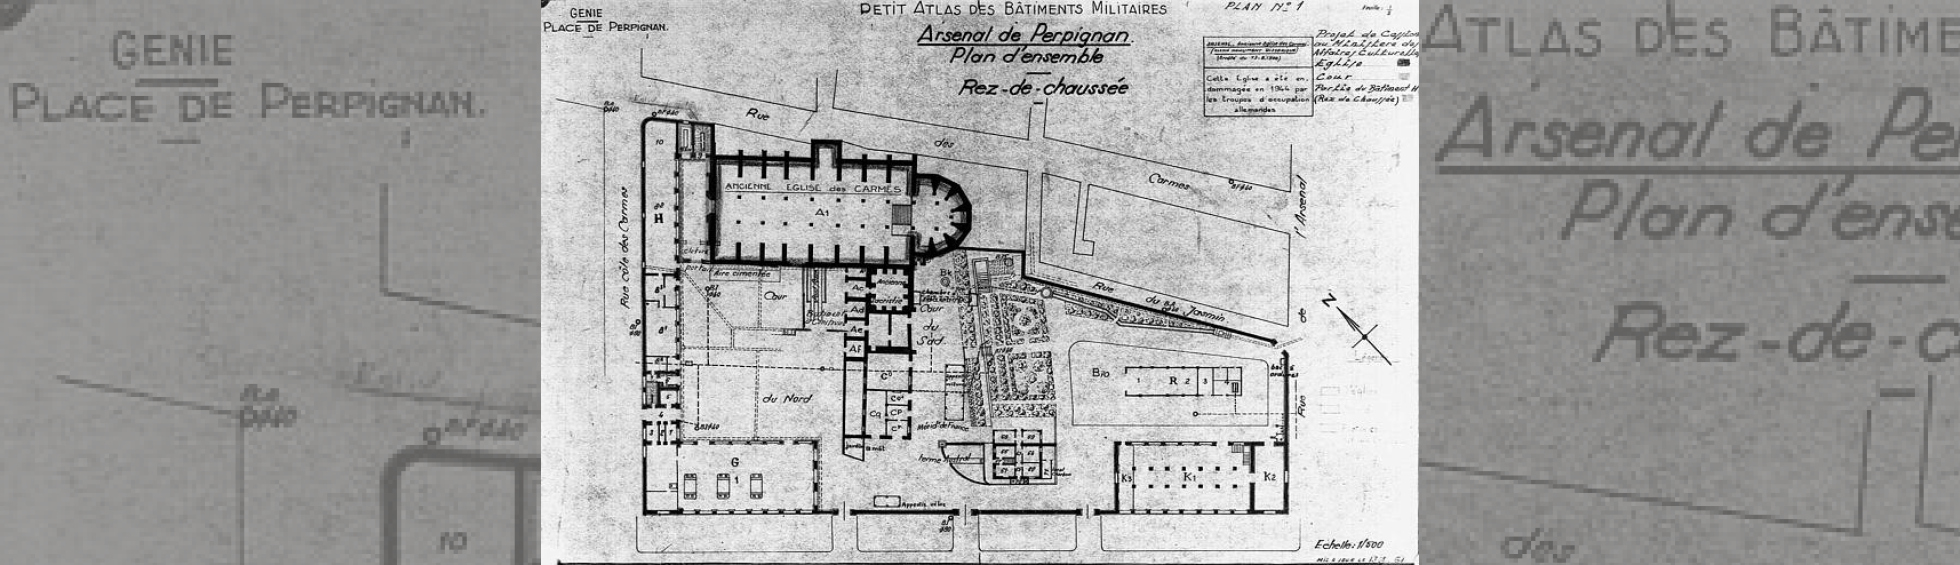 Plan militaire :une aile a été construite devant l'entrée de l'église,ainsi que d'autres batiments dans l'enceinte du couvent